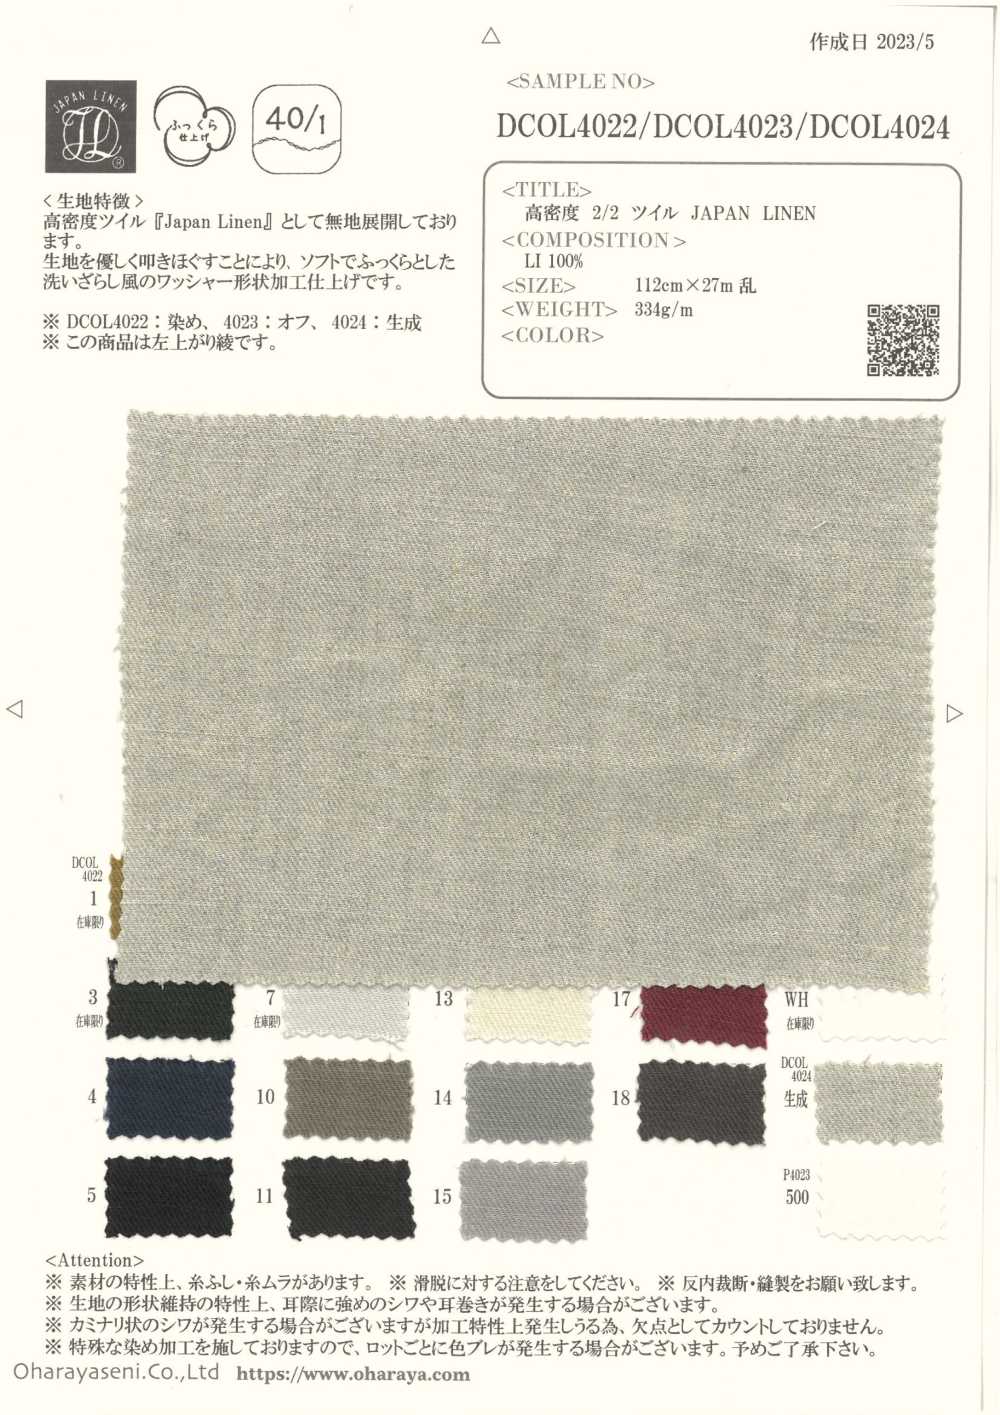 DCOL4024 LIN JAPON Sergé 2/2 Haute Densité[Fabrication De Textile] Oharayaseni